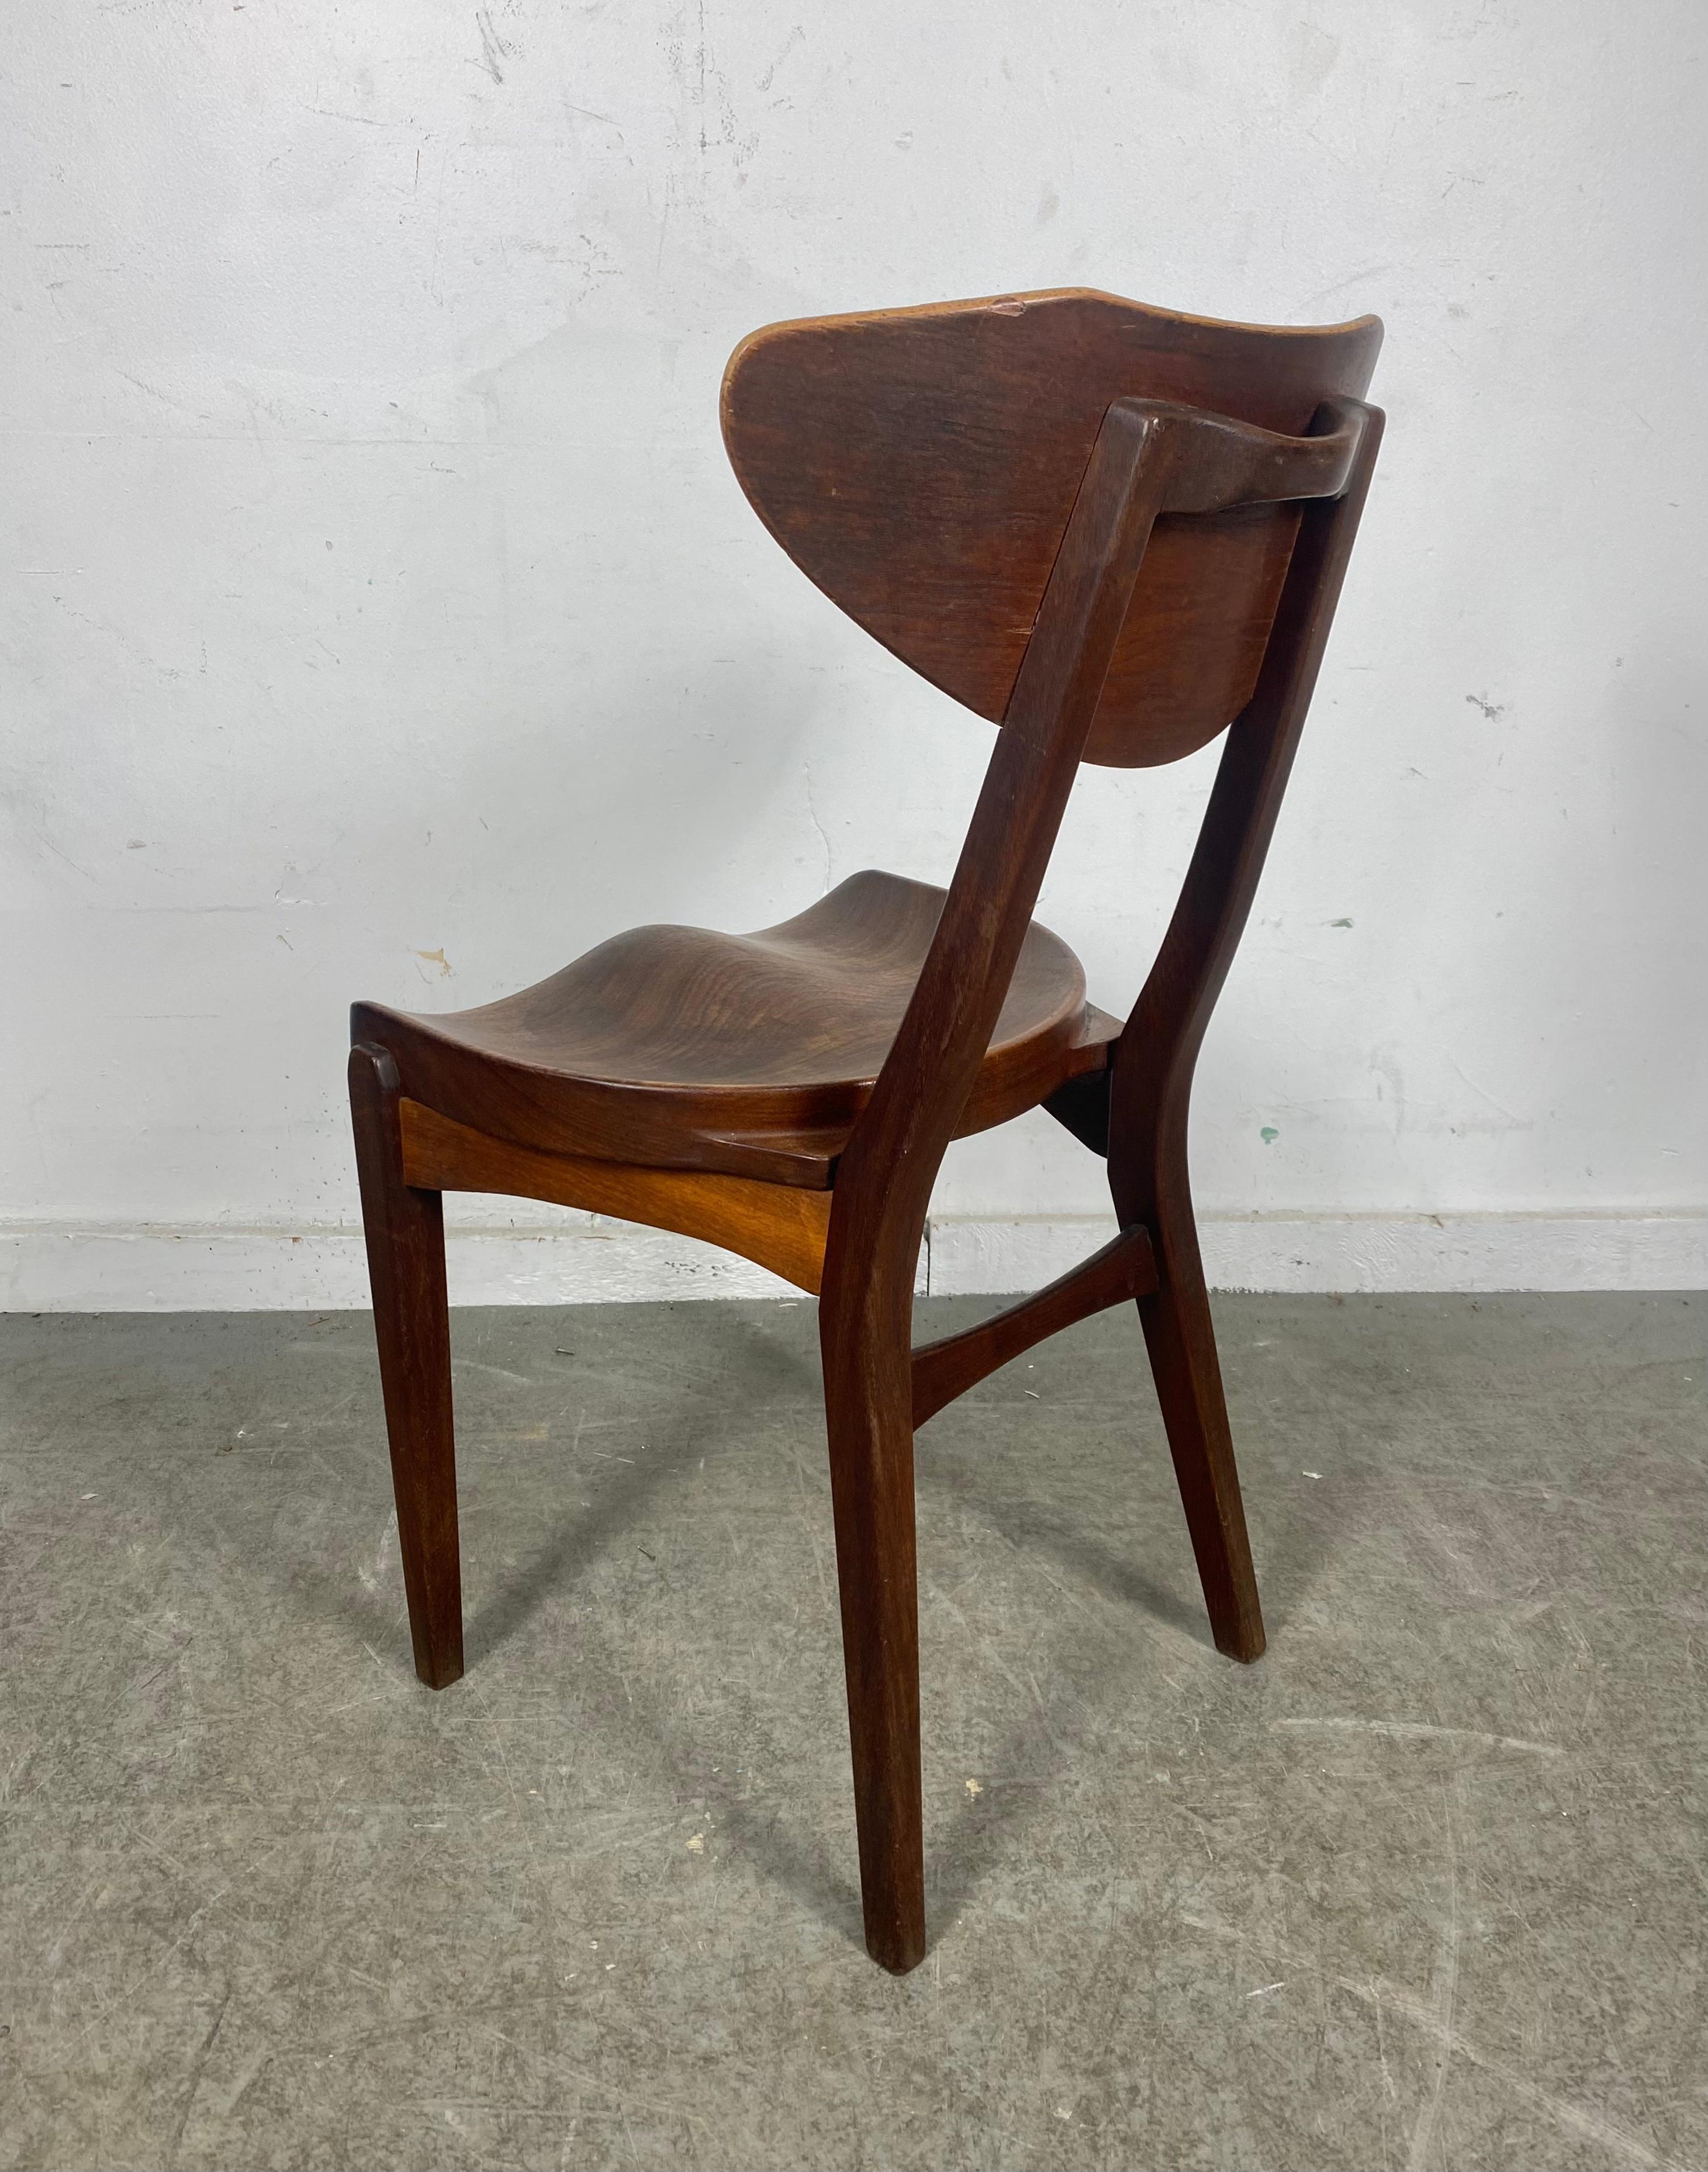 Scandinavian Modern Modernist Sculptural Chair Designed by Richard Jensen and Kjaerulff Rasmusse